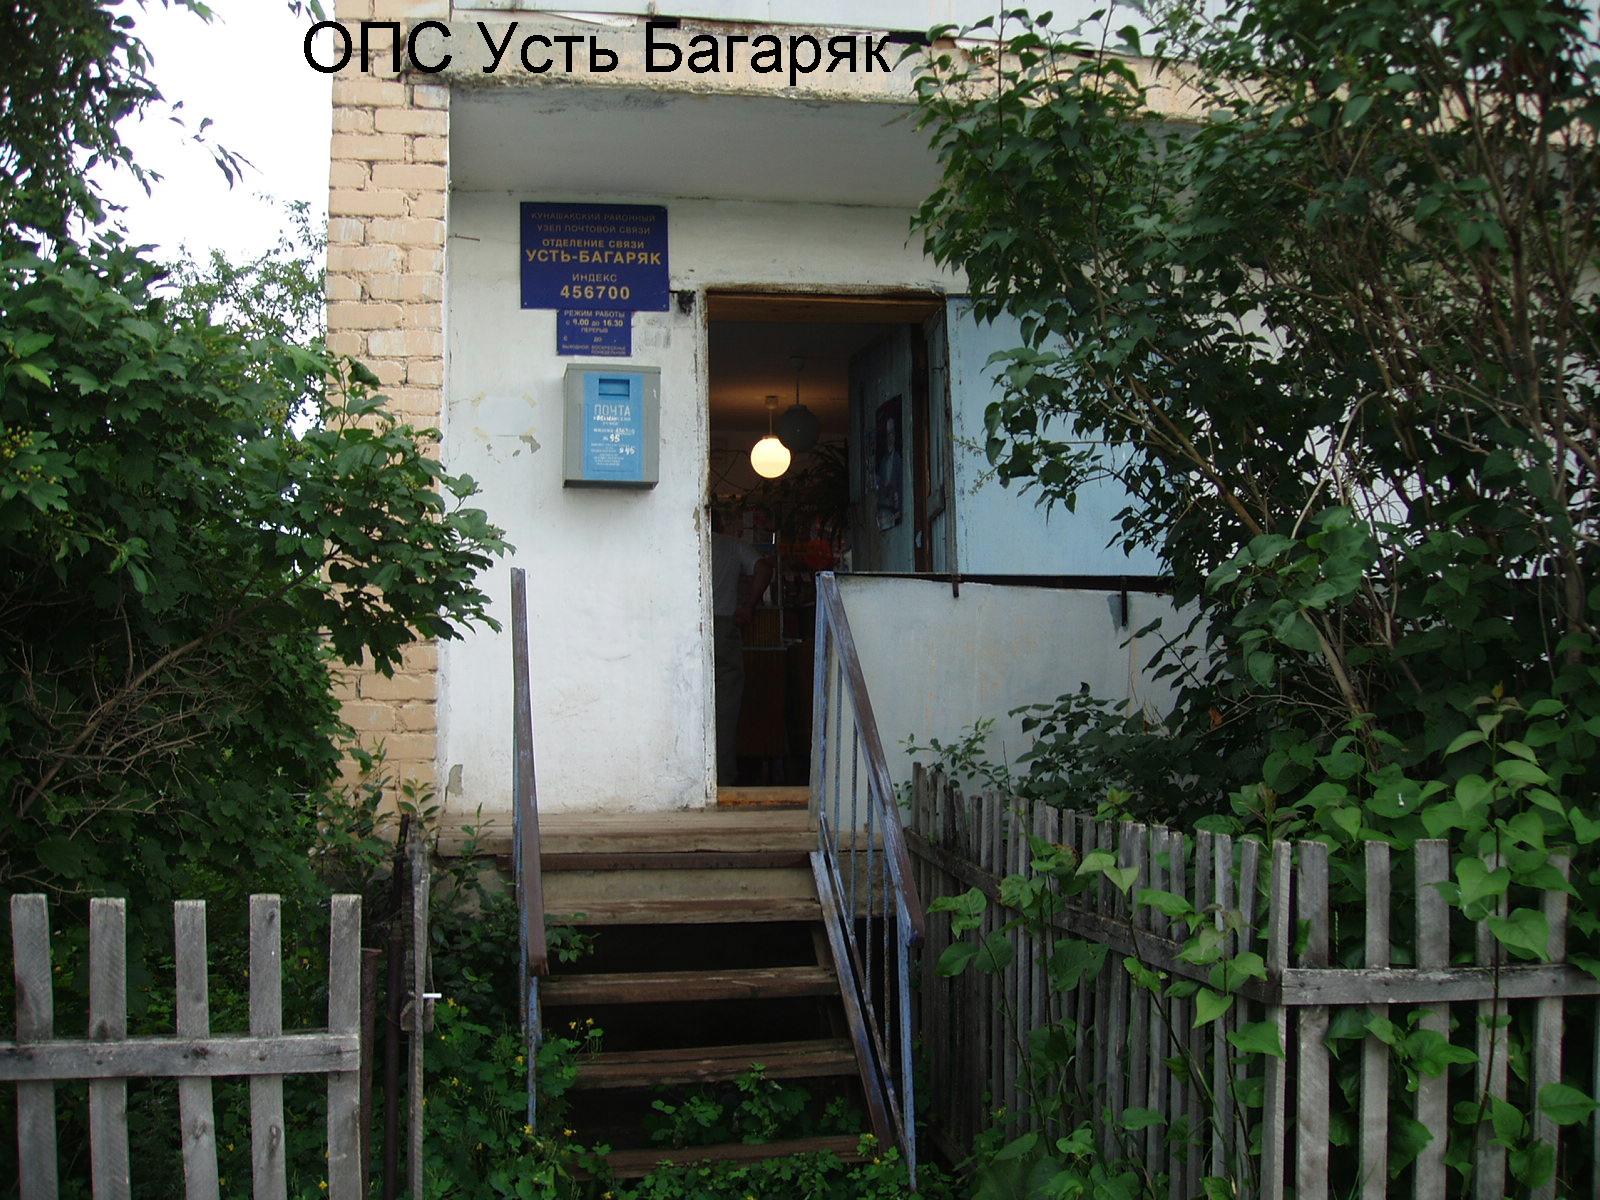 ВХОД, отделение почтовой связи 456700, Челябинская обл., Кунашакский р-он, Усть-Багаряк